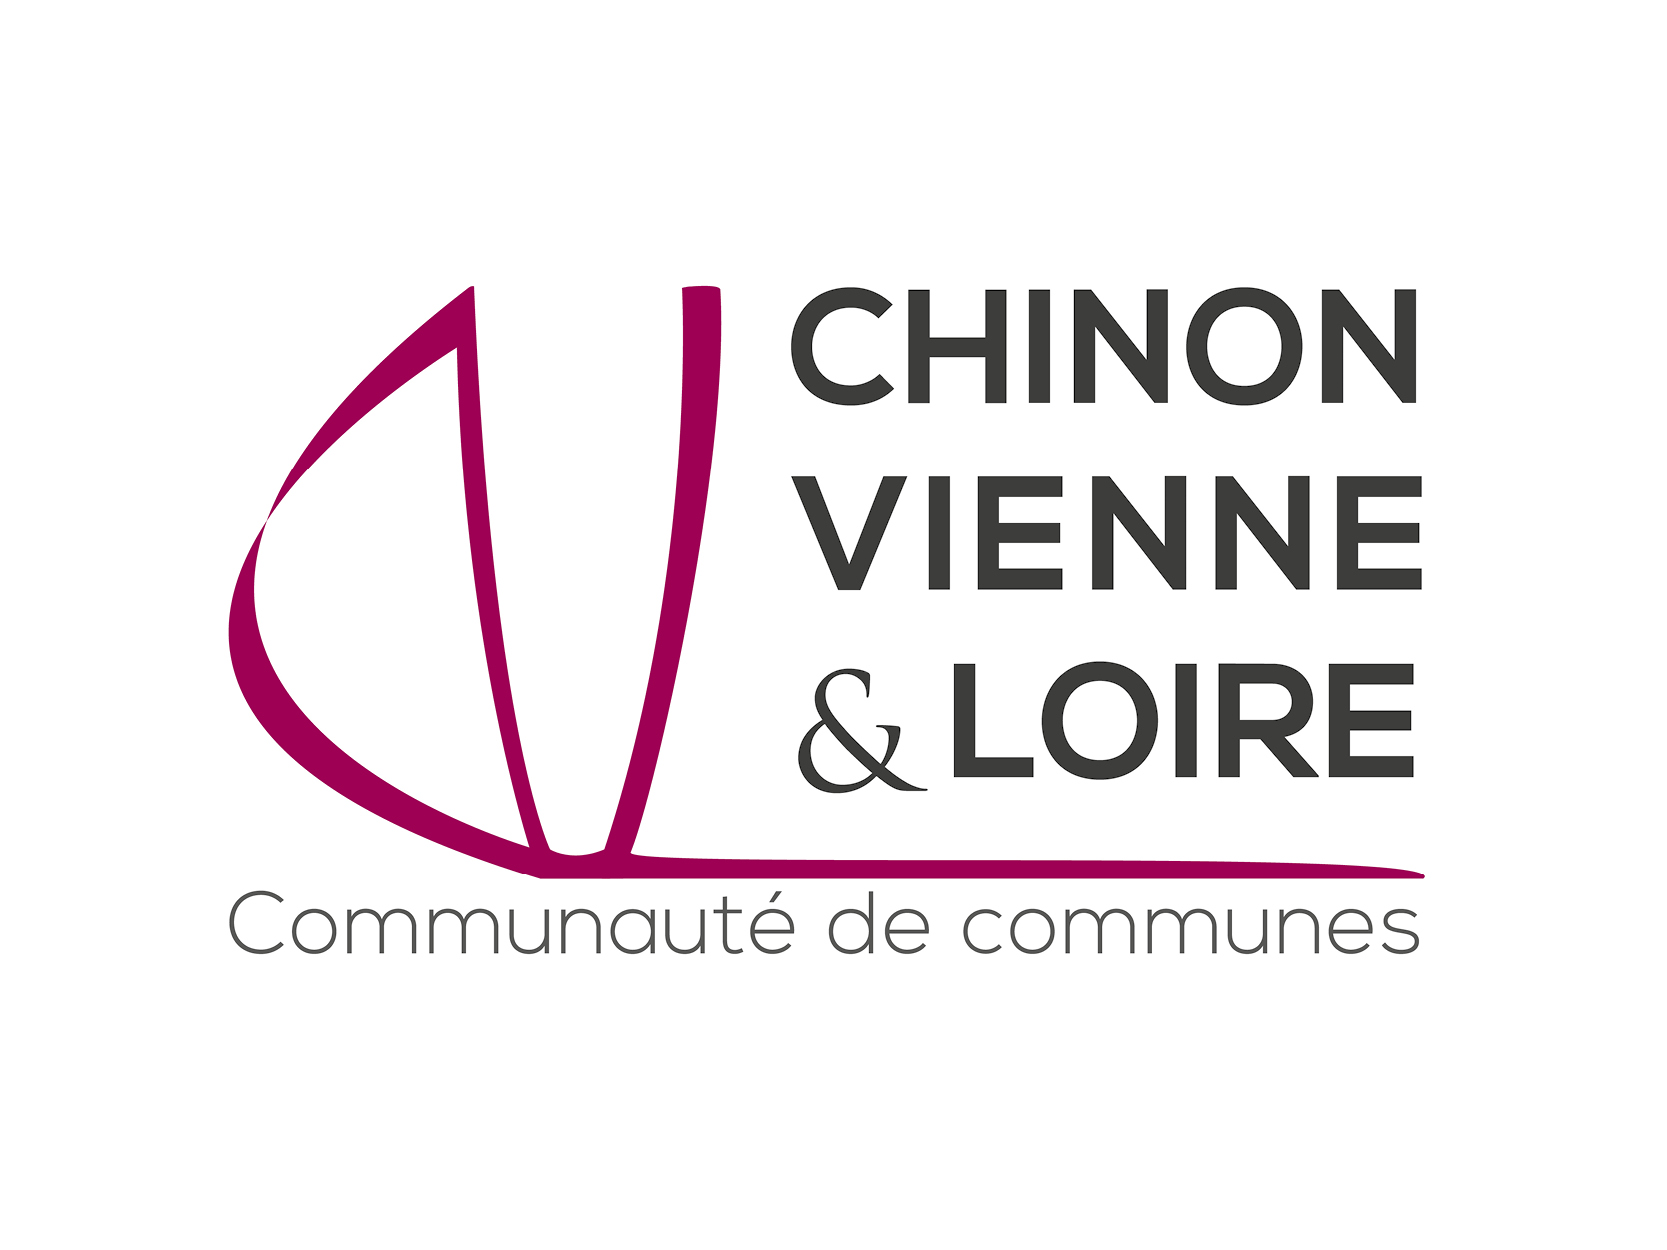 CC Chinon Vienne et Loire (retour à l'accueil)